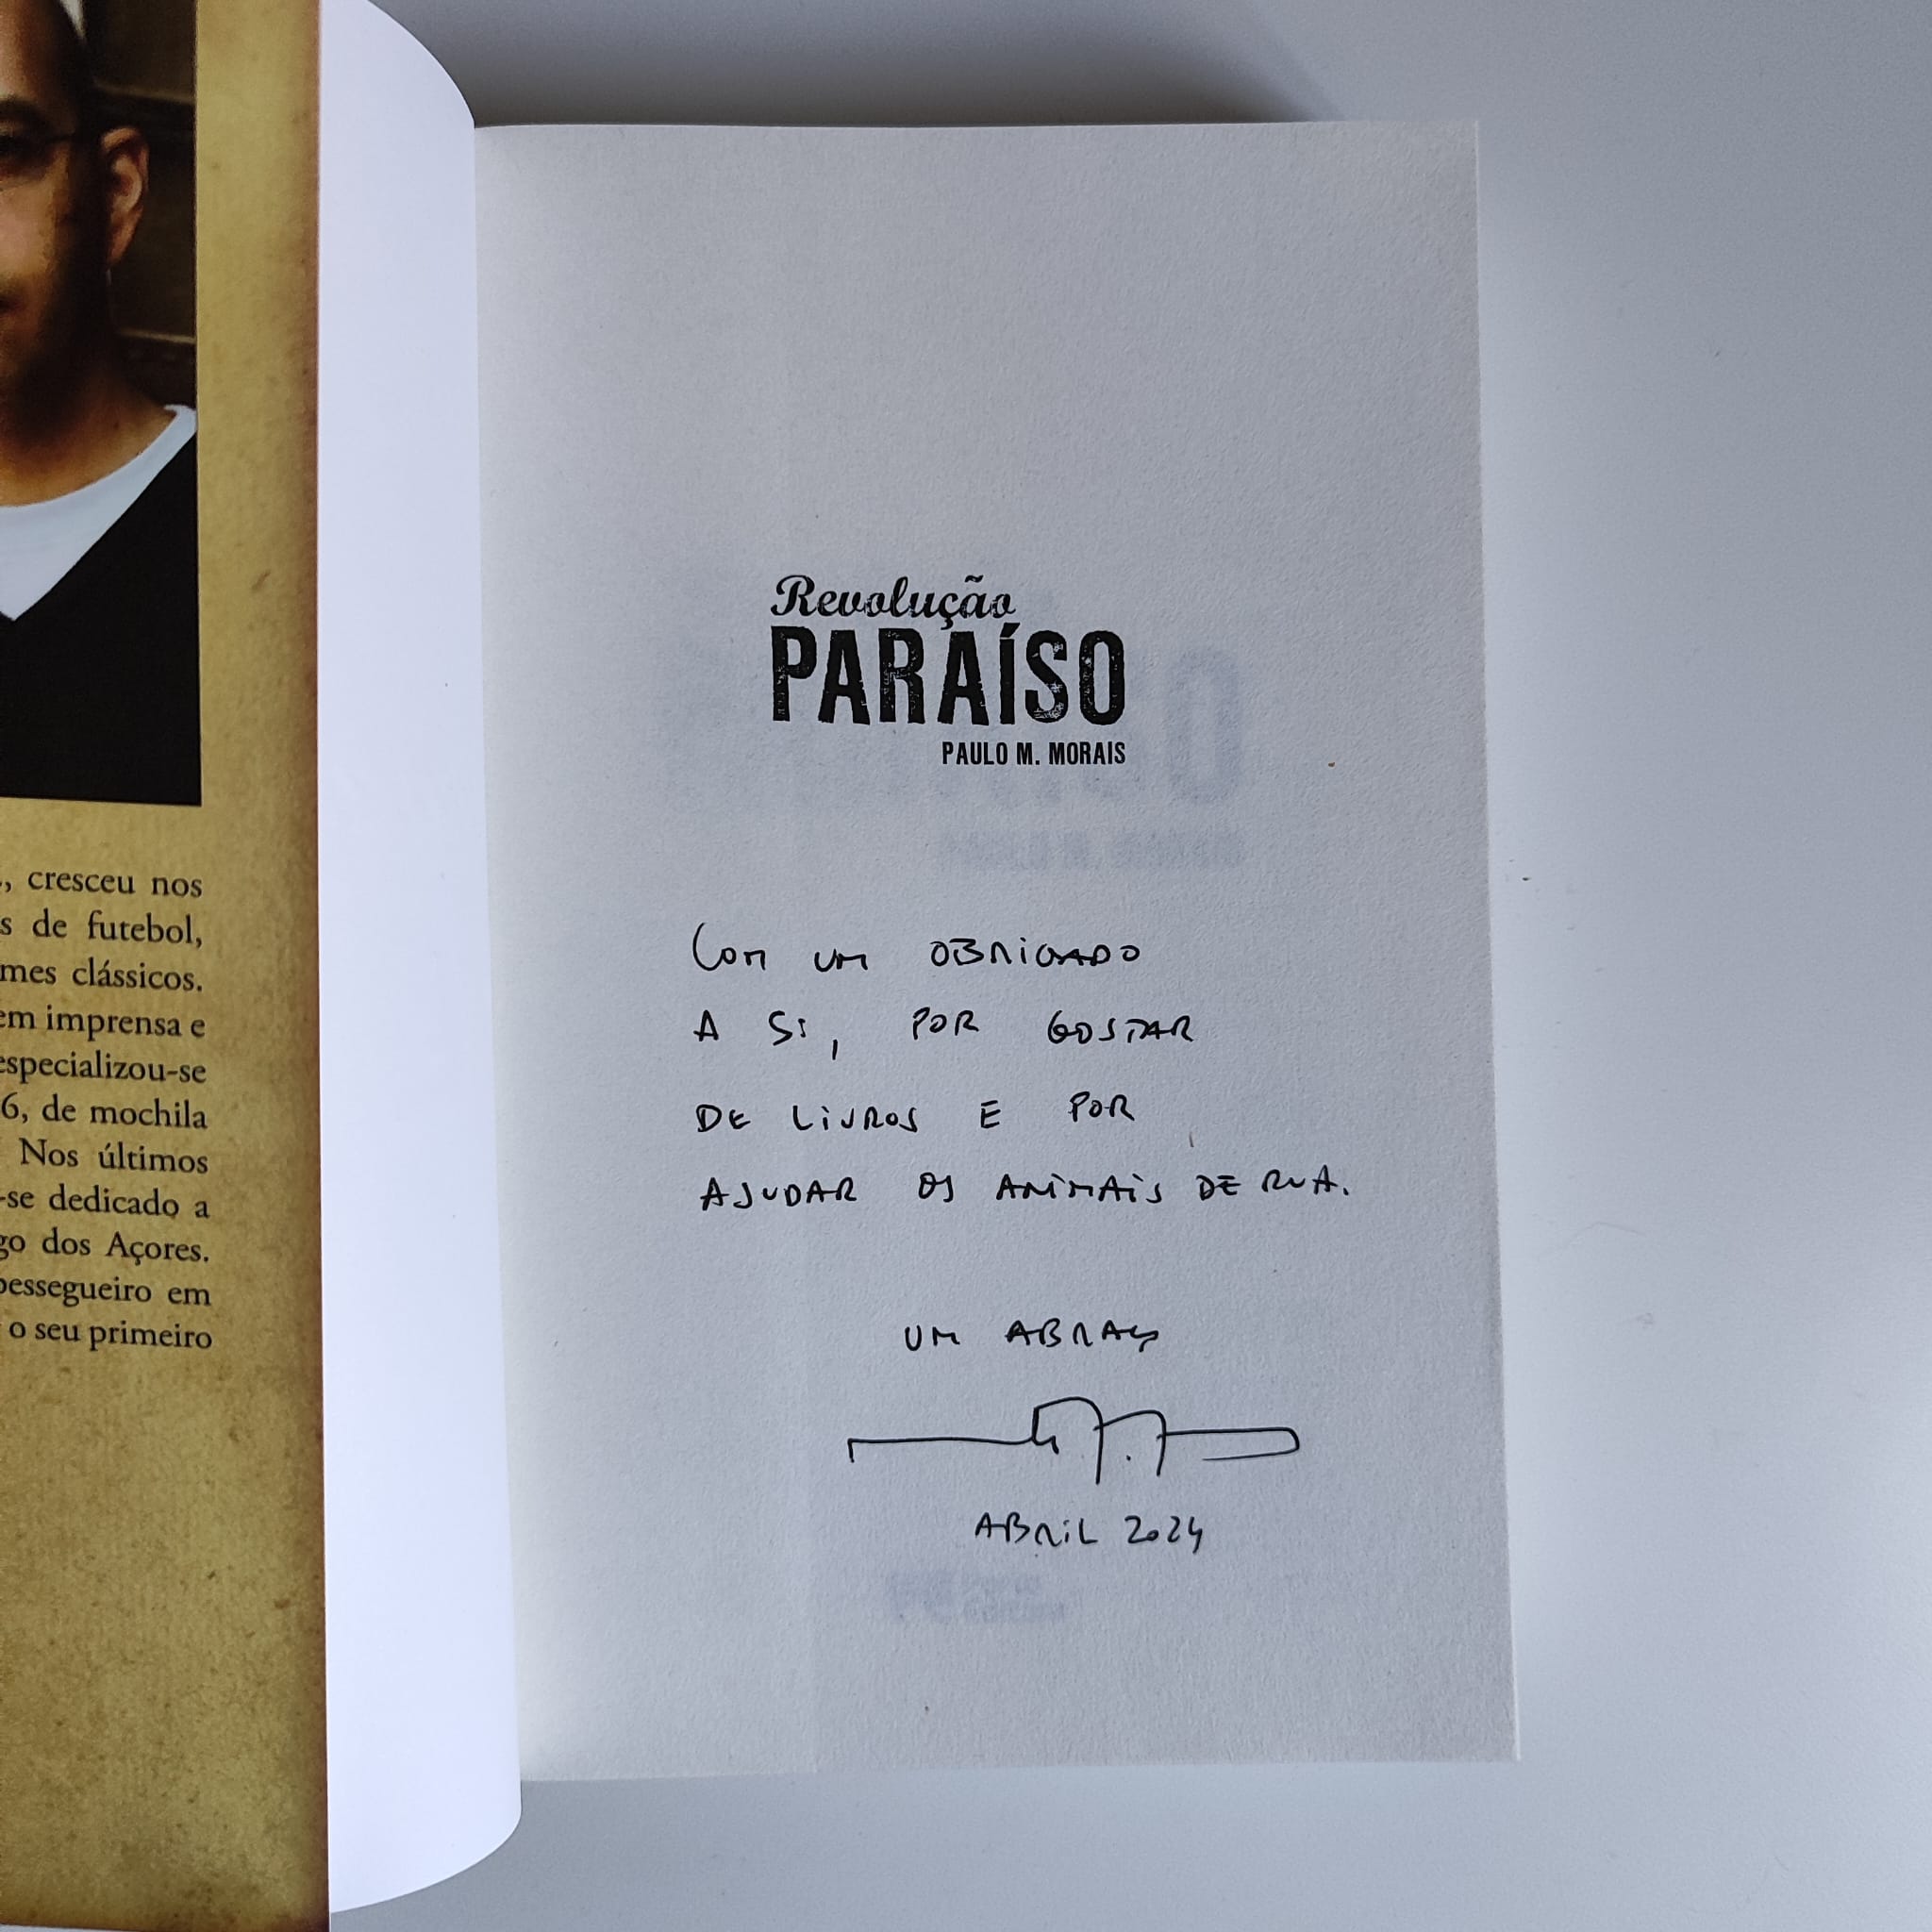 Revolução Paraíso, de Paulo M. Morais